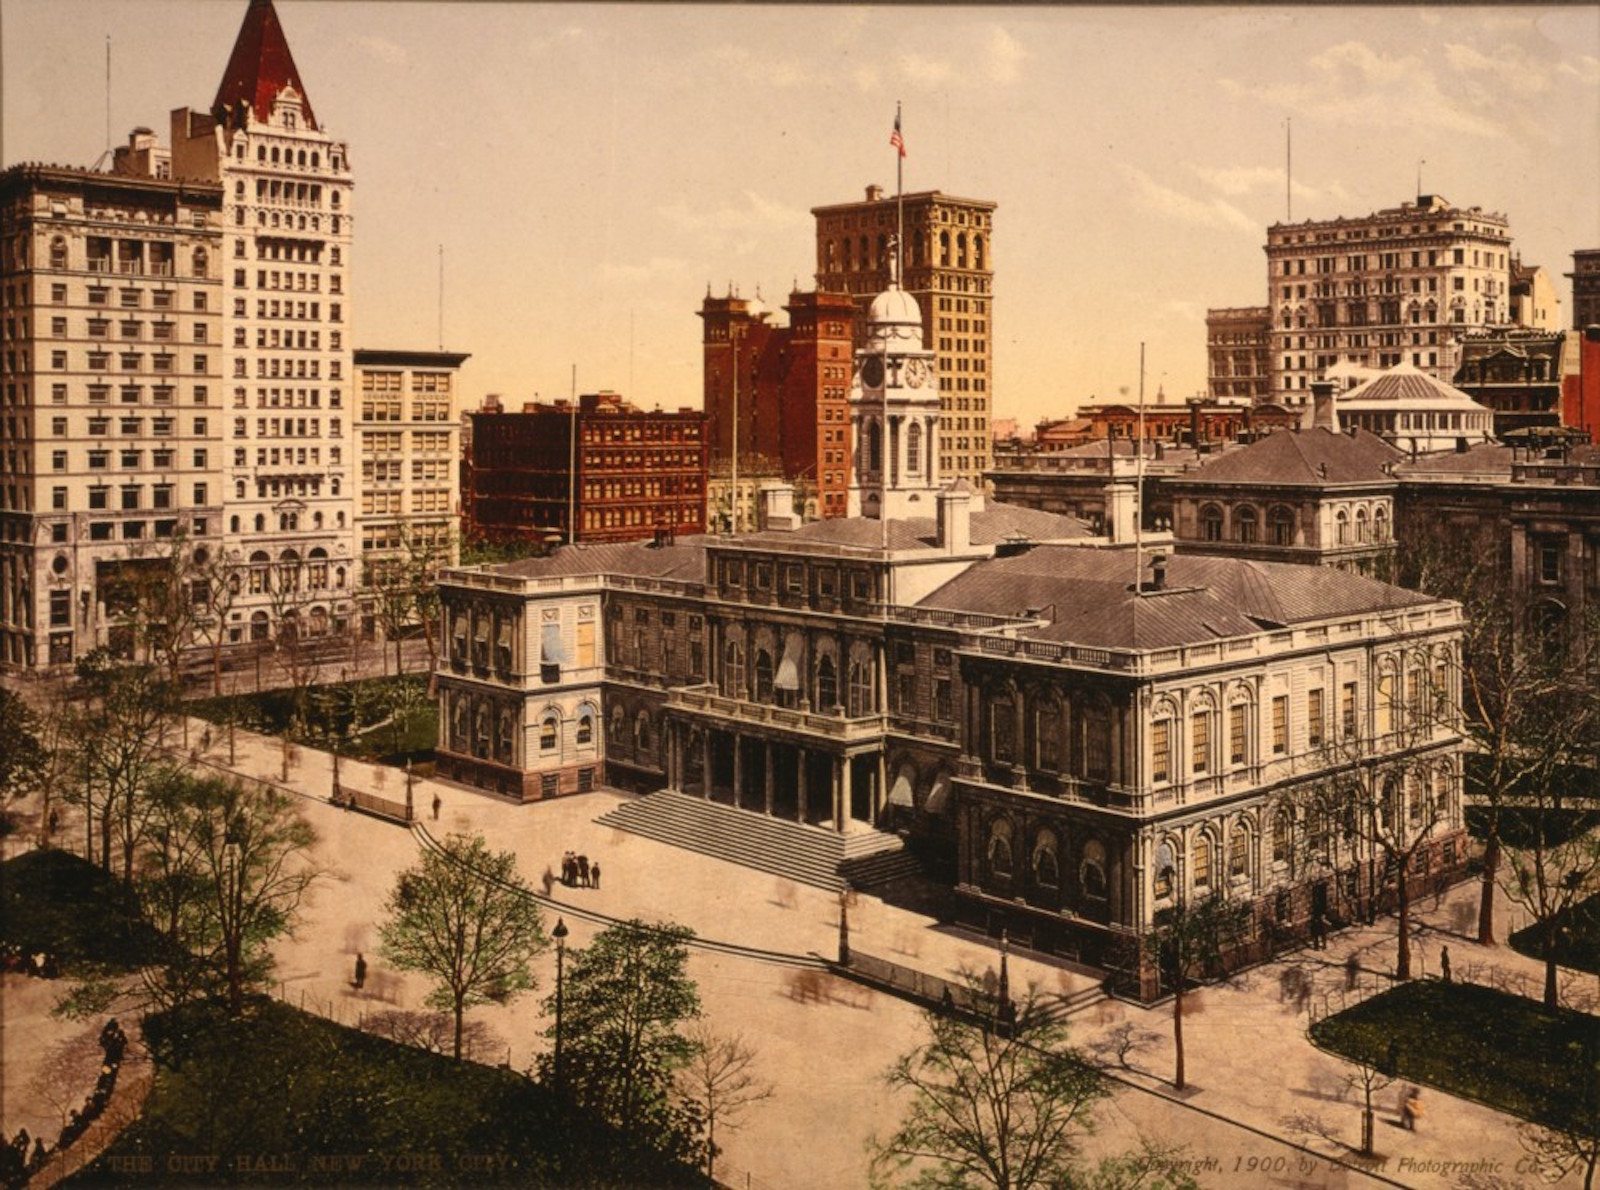 Америка 1900. Нью Йорк 1900. Нью Йорк 19 век. New York в 1900 году. Архитектура Нью-Йорка 19 века.